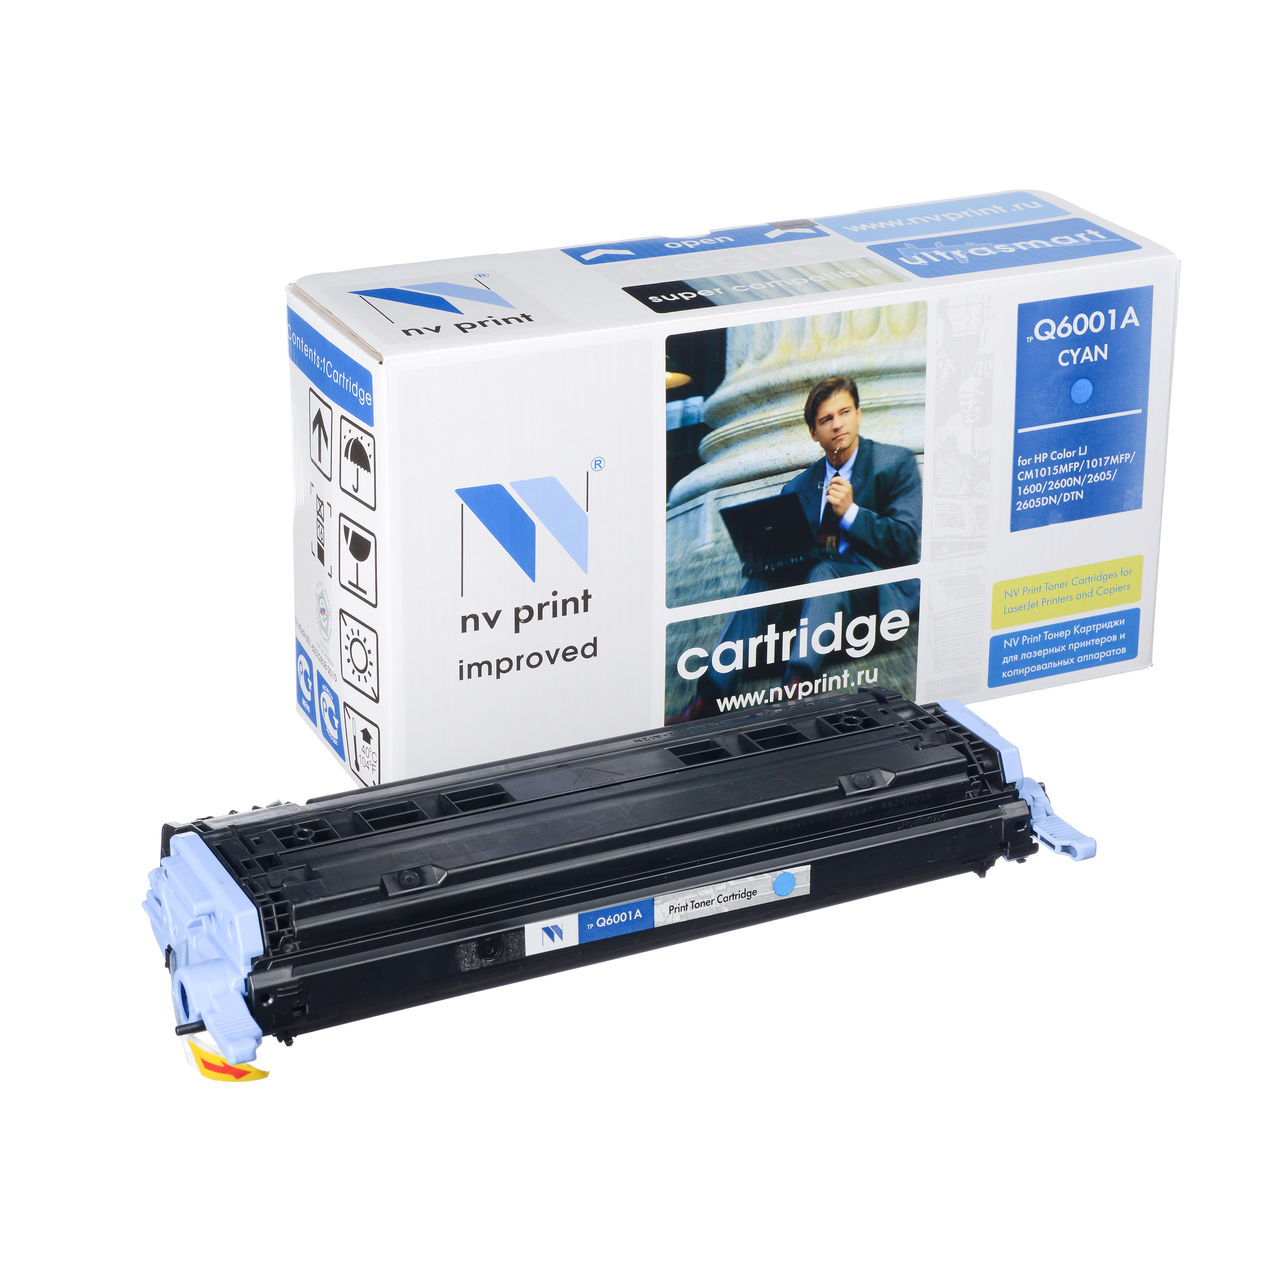 Картридж HP NV-Print (Q6001A Cyan) (2,0К) для LJ 1600/2600/2605/CM1015/1017 голубой